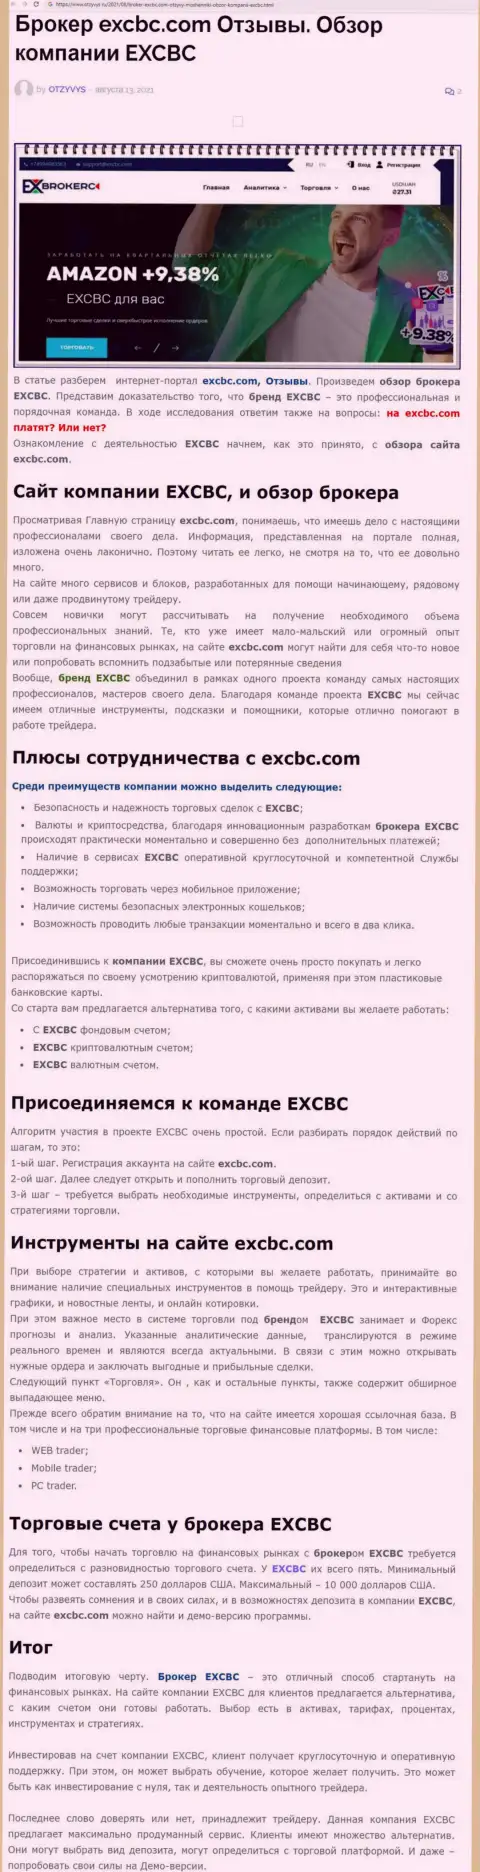 EXCBC Сom - это ответственная и порядочная FOREX организация, это следует из публикации на сайте Отзывс Ру